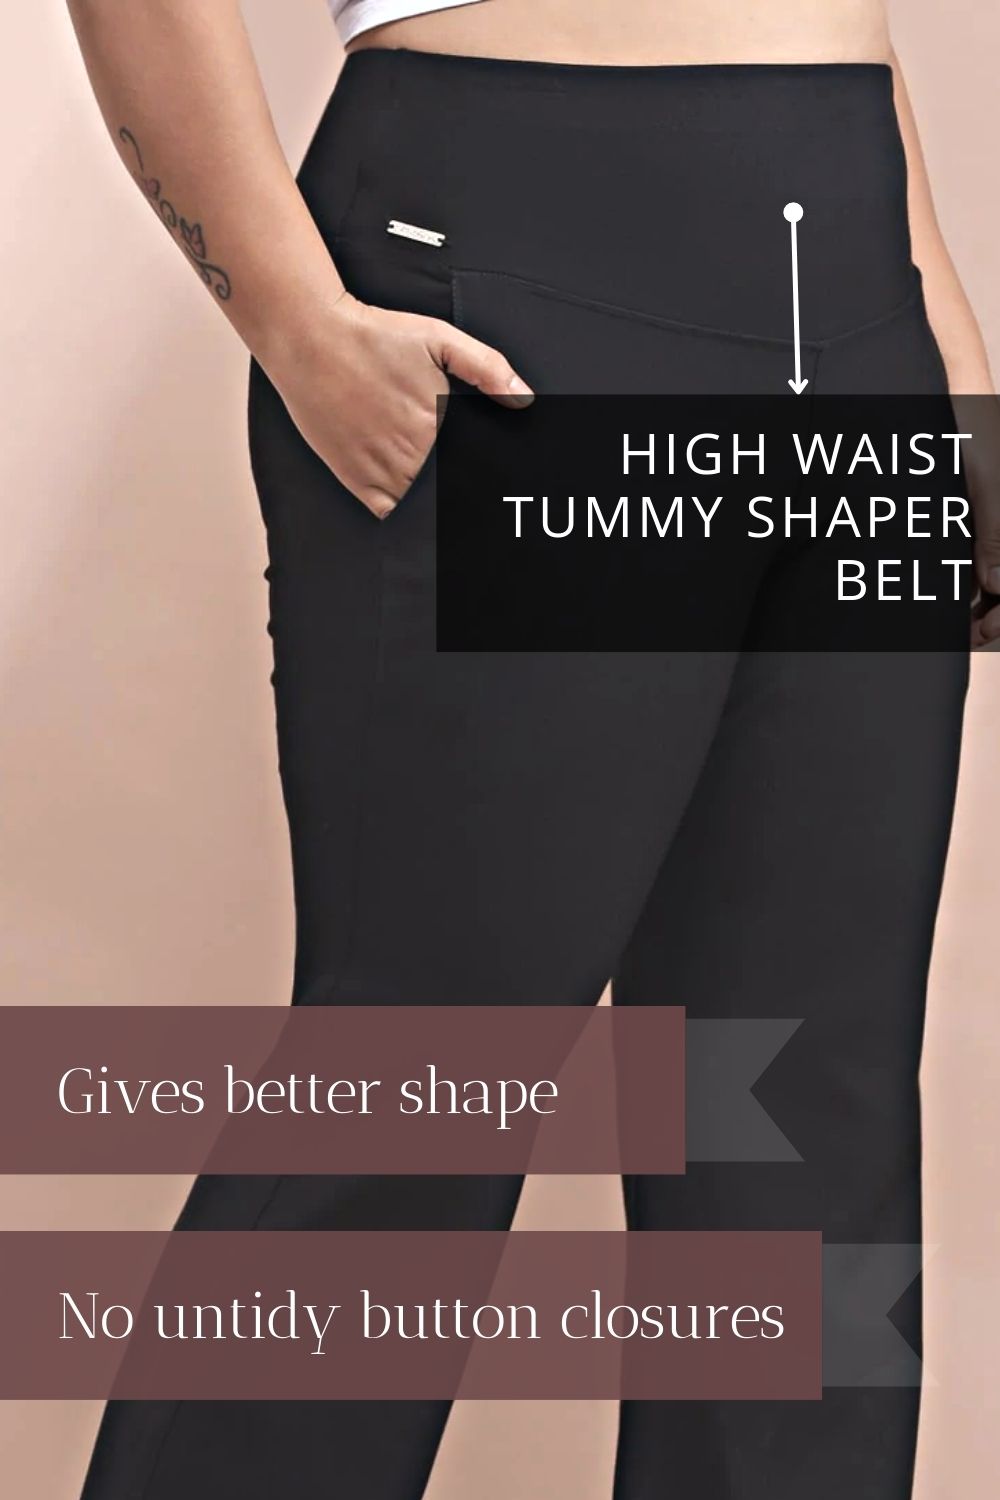 High waist tummy shaper belt